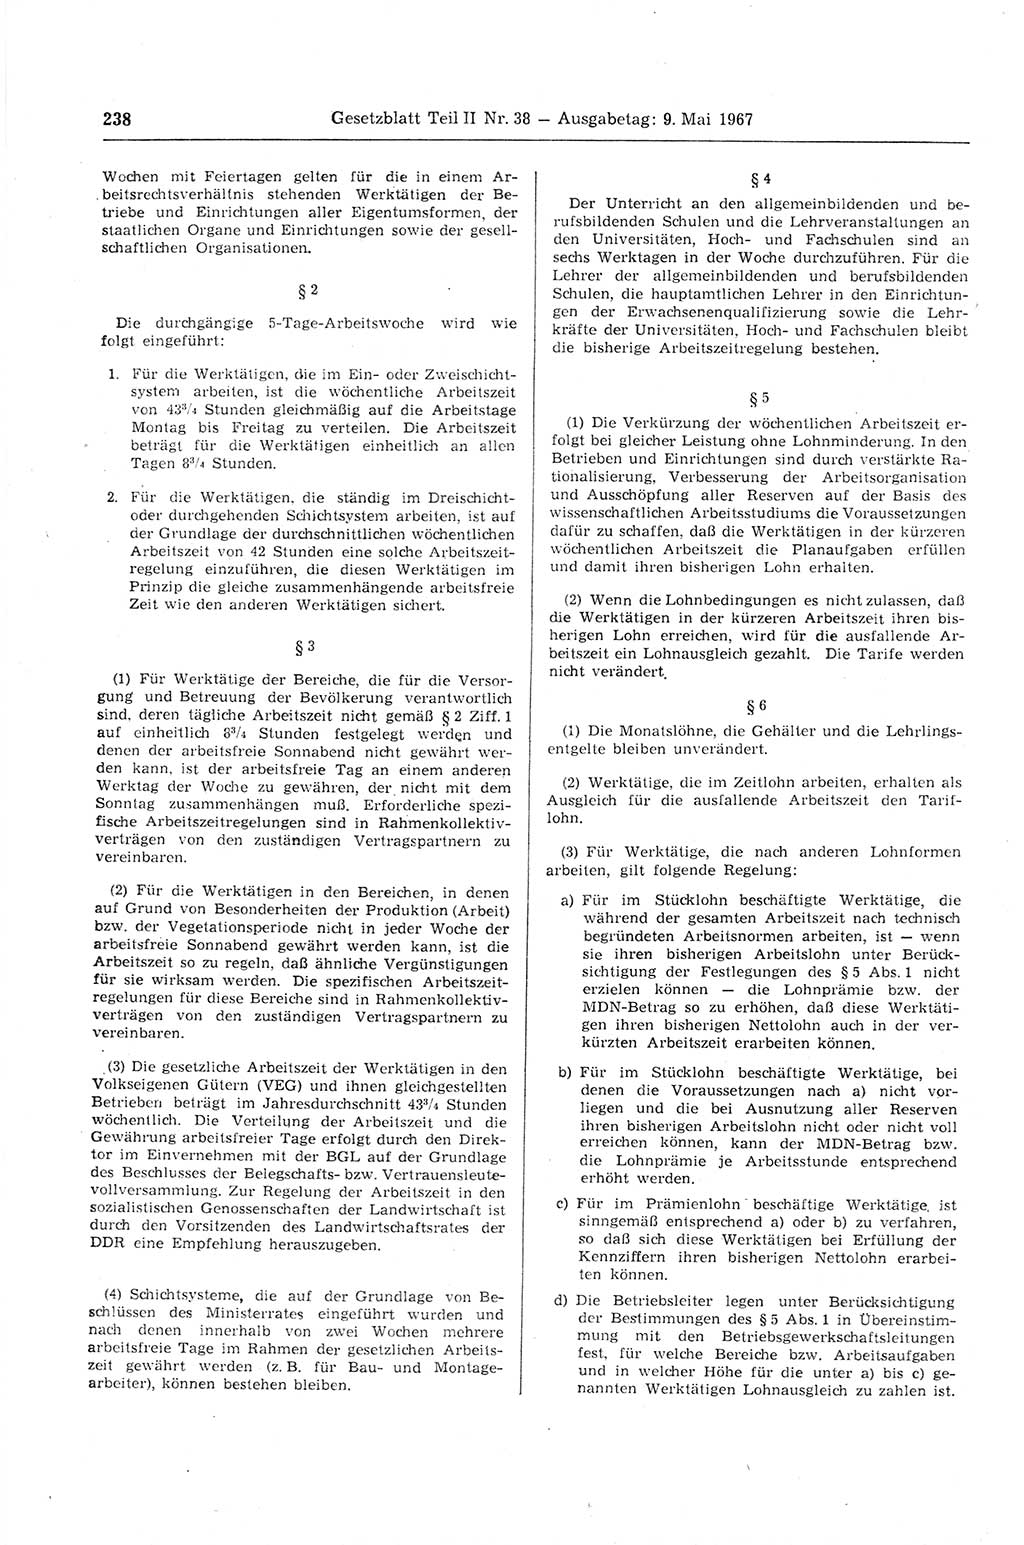 Gesetzblatt (GBl.) der Deutschen Demokratischen Republik (DDR) Teil ⅠⅠ 1967, Seite 238 (GBl. DDR ⅠⅠ 1967, S. 238)